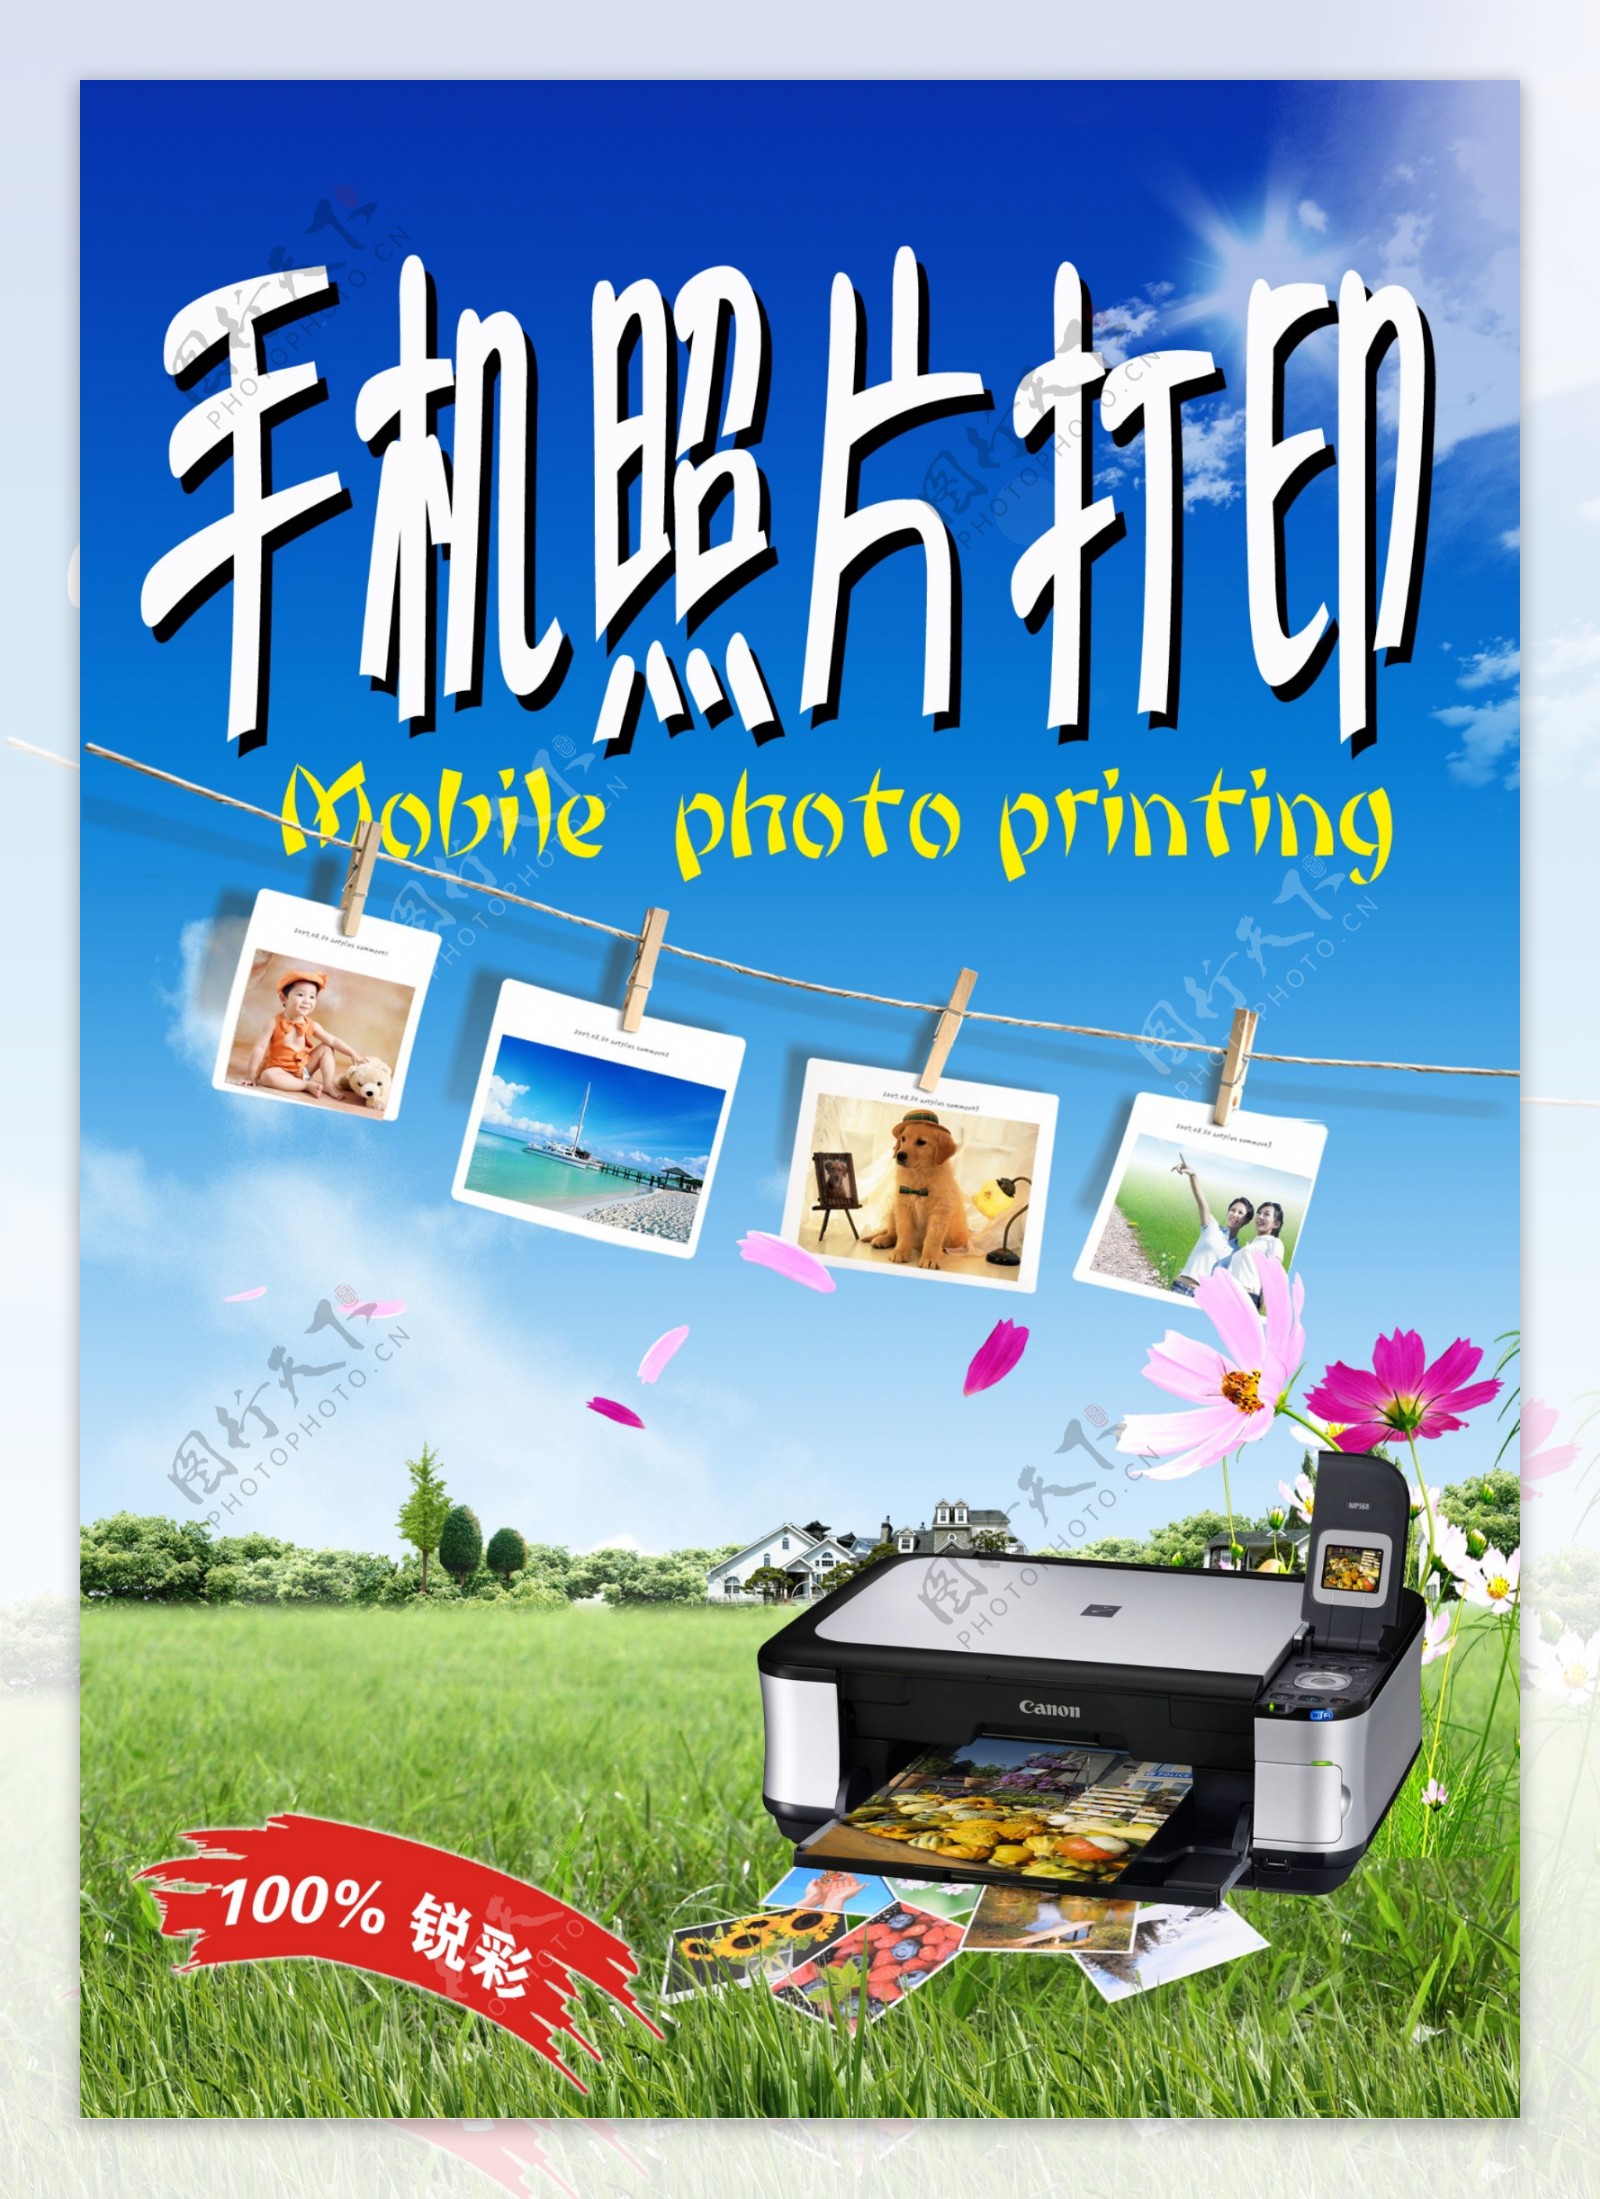 打印机图片